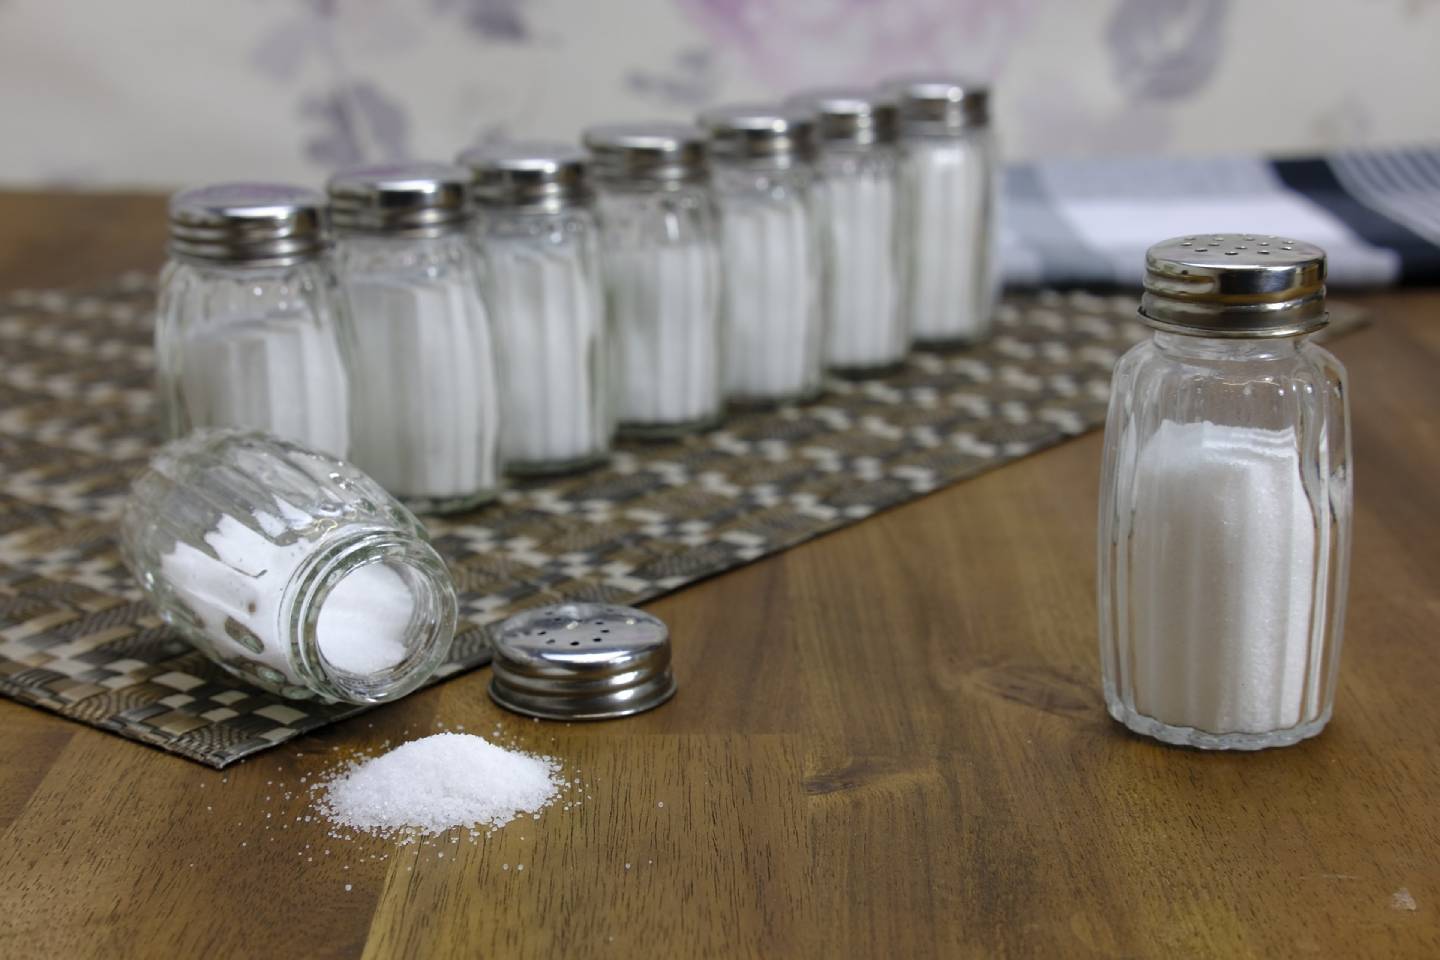 Новости Казахстана / Общество в Казахстане / В РК употребляют соли в 4 раза больше безопасной нормы, рекомендованной ВОЗ